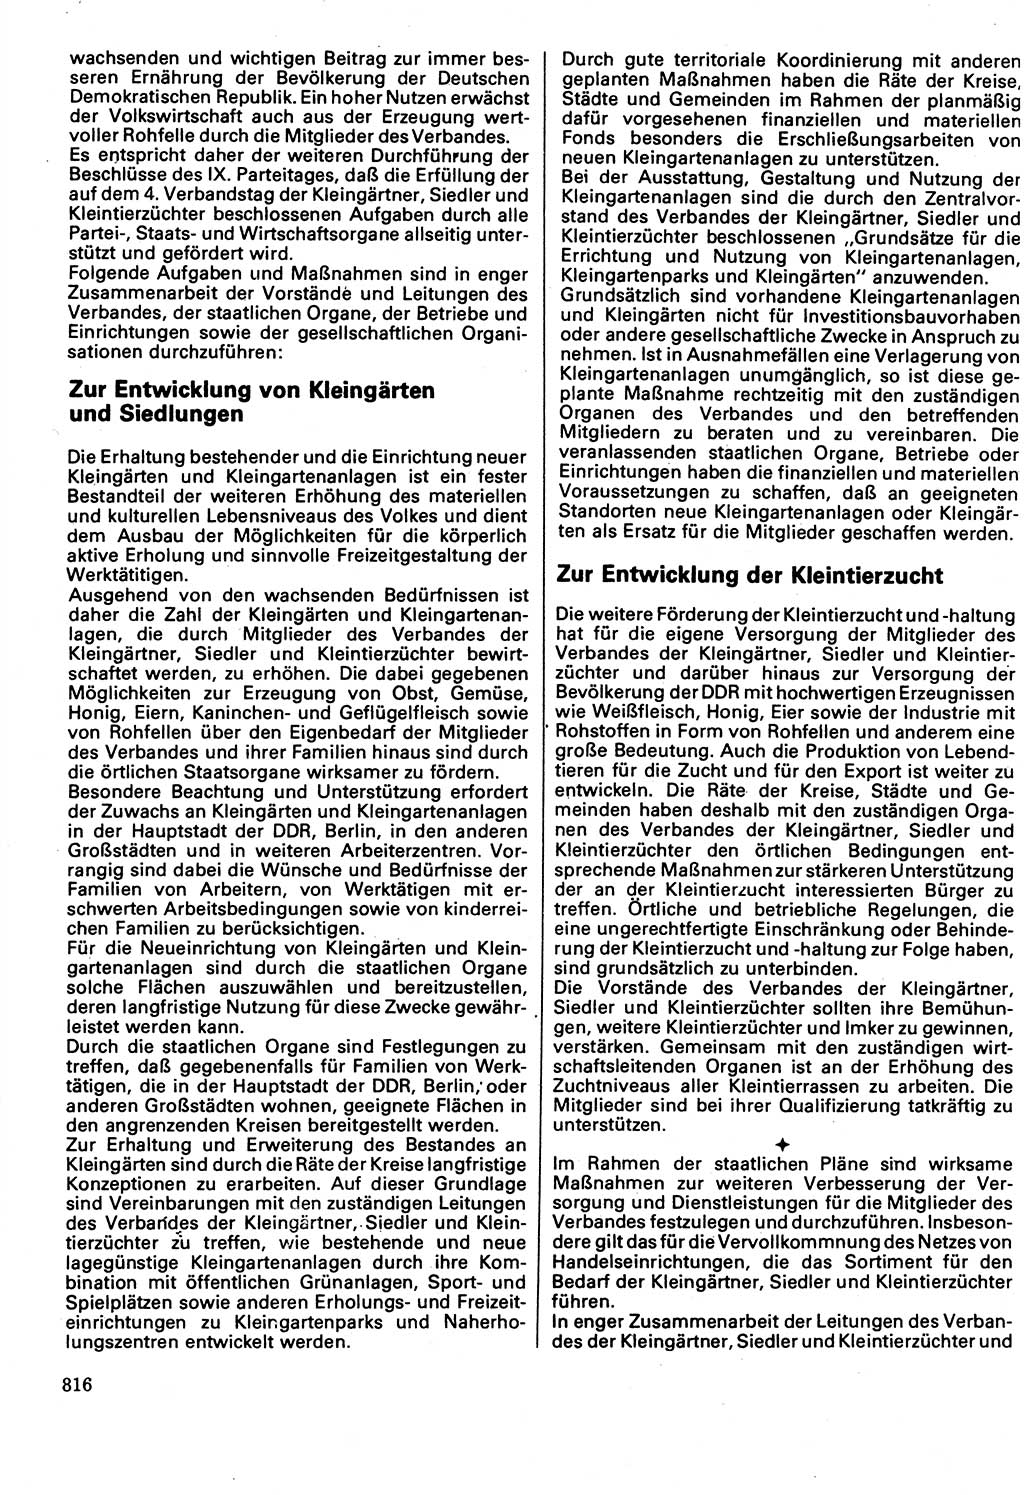 Neuer Weg (NW), Organ des Zentralkomitees (ZK) der SED (Sozialistische Einheitspartei Deutschlands) fÃ¼r Fragen des Parteilebens, 32. Jahrgang [Deutsche Demokratische Republik (DDR)] 1977, Seite 816 (NW ZK SED DDR 1977, S. 816)